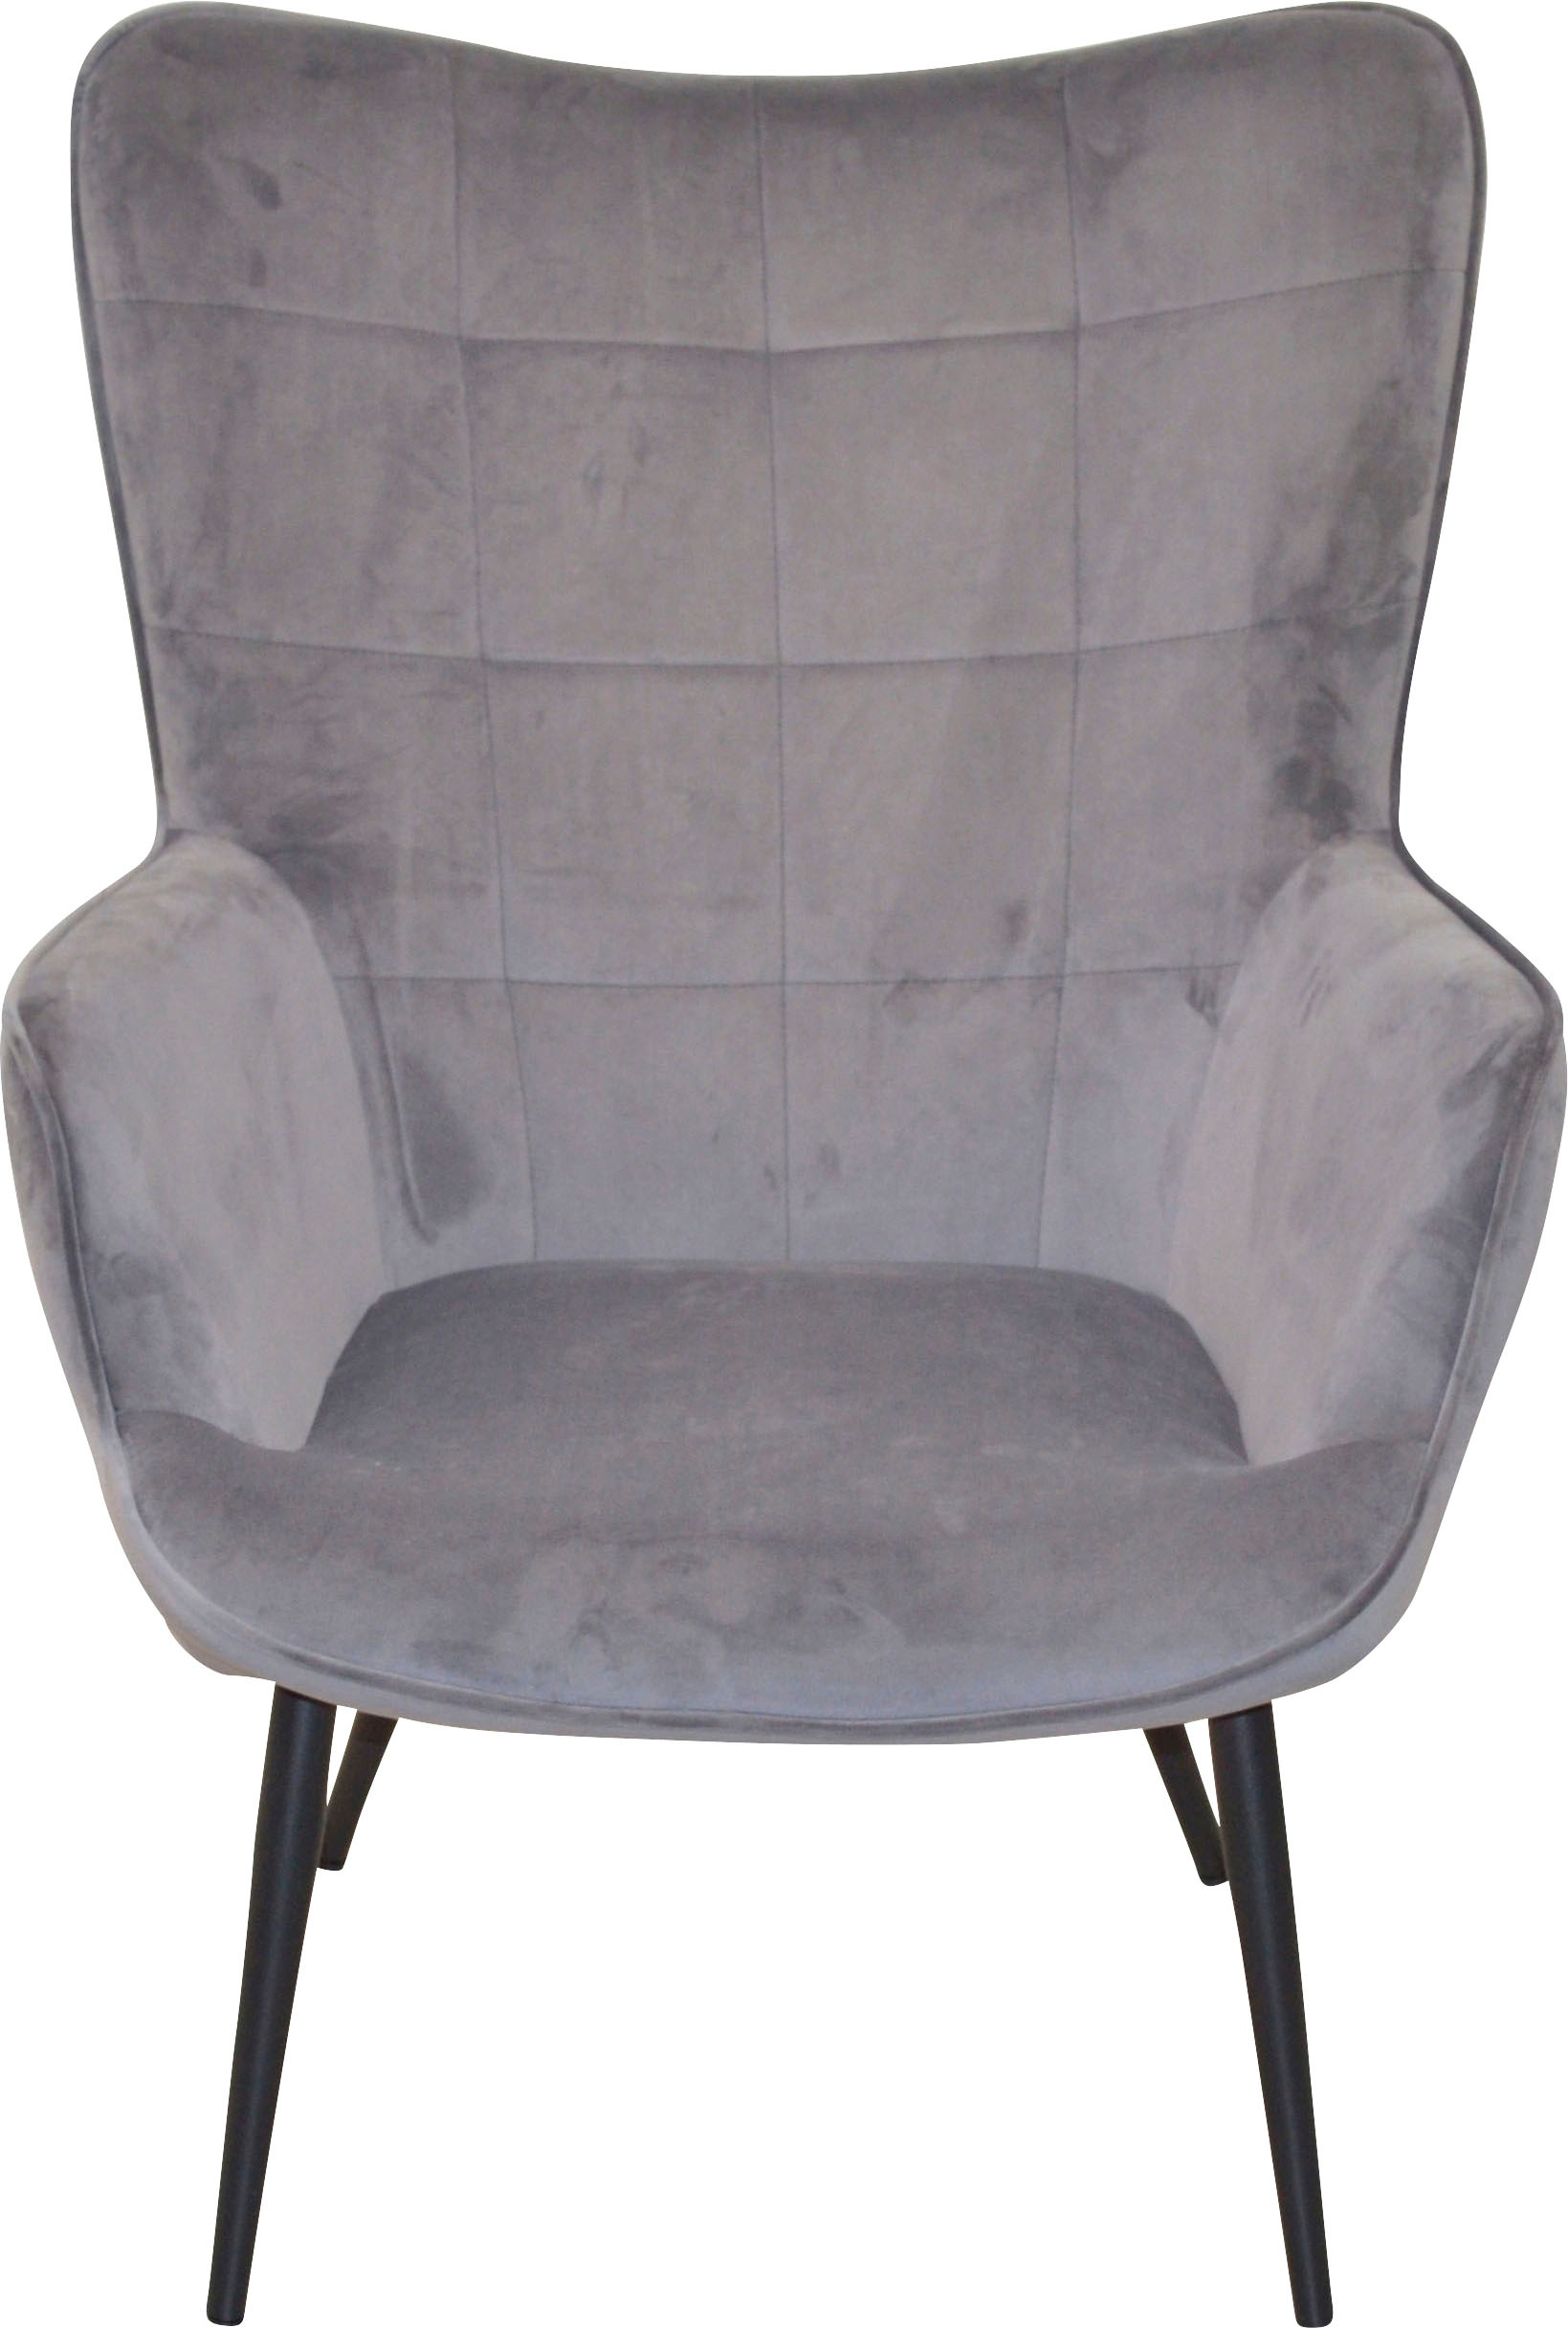 | kaufen lackiert HOFMANN Sessel mit Beinen MORE online aus »Jaro«, schwarz AND Stahlrohr, Polstersessel LIVING Jelmoli-Versand